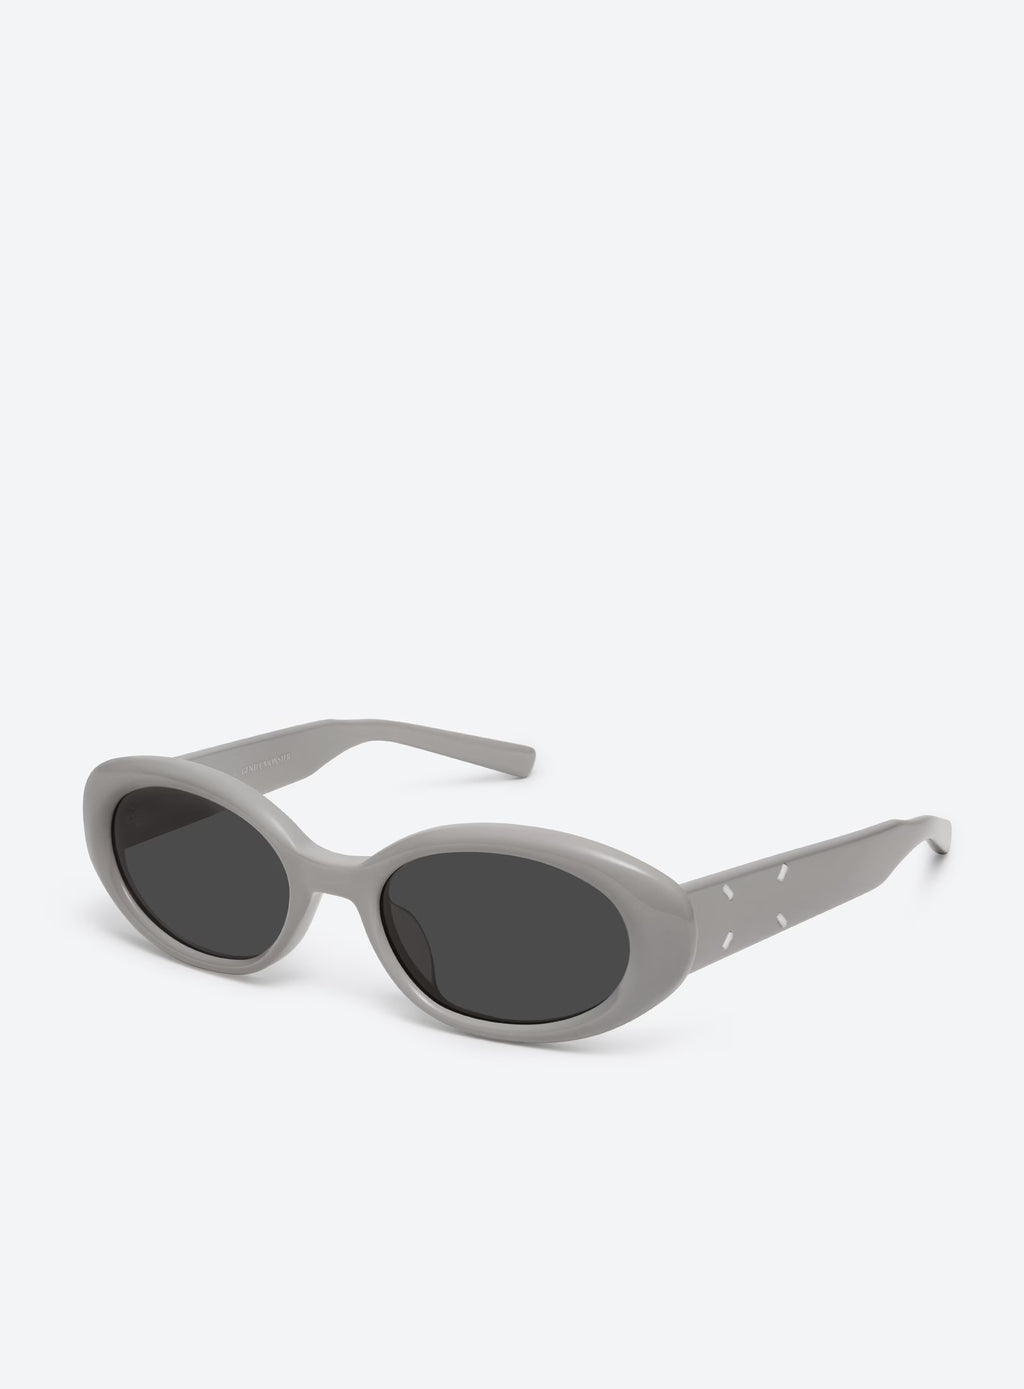 GENTLE MONSTER X MAISON MARGIELA MM107-G10 Sunglasses